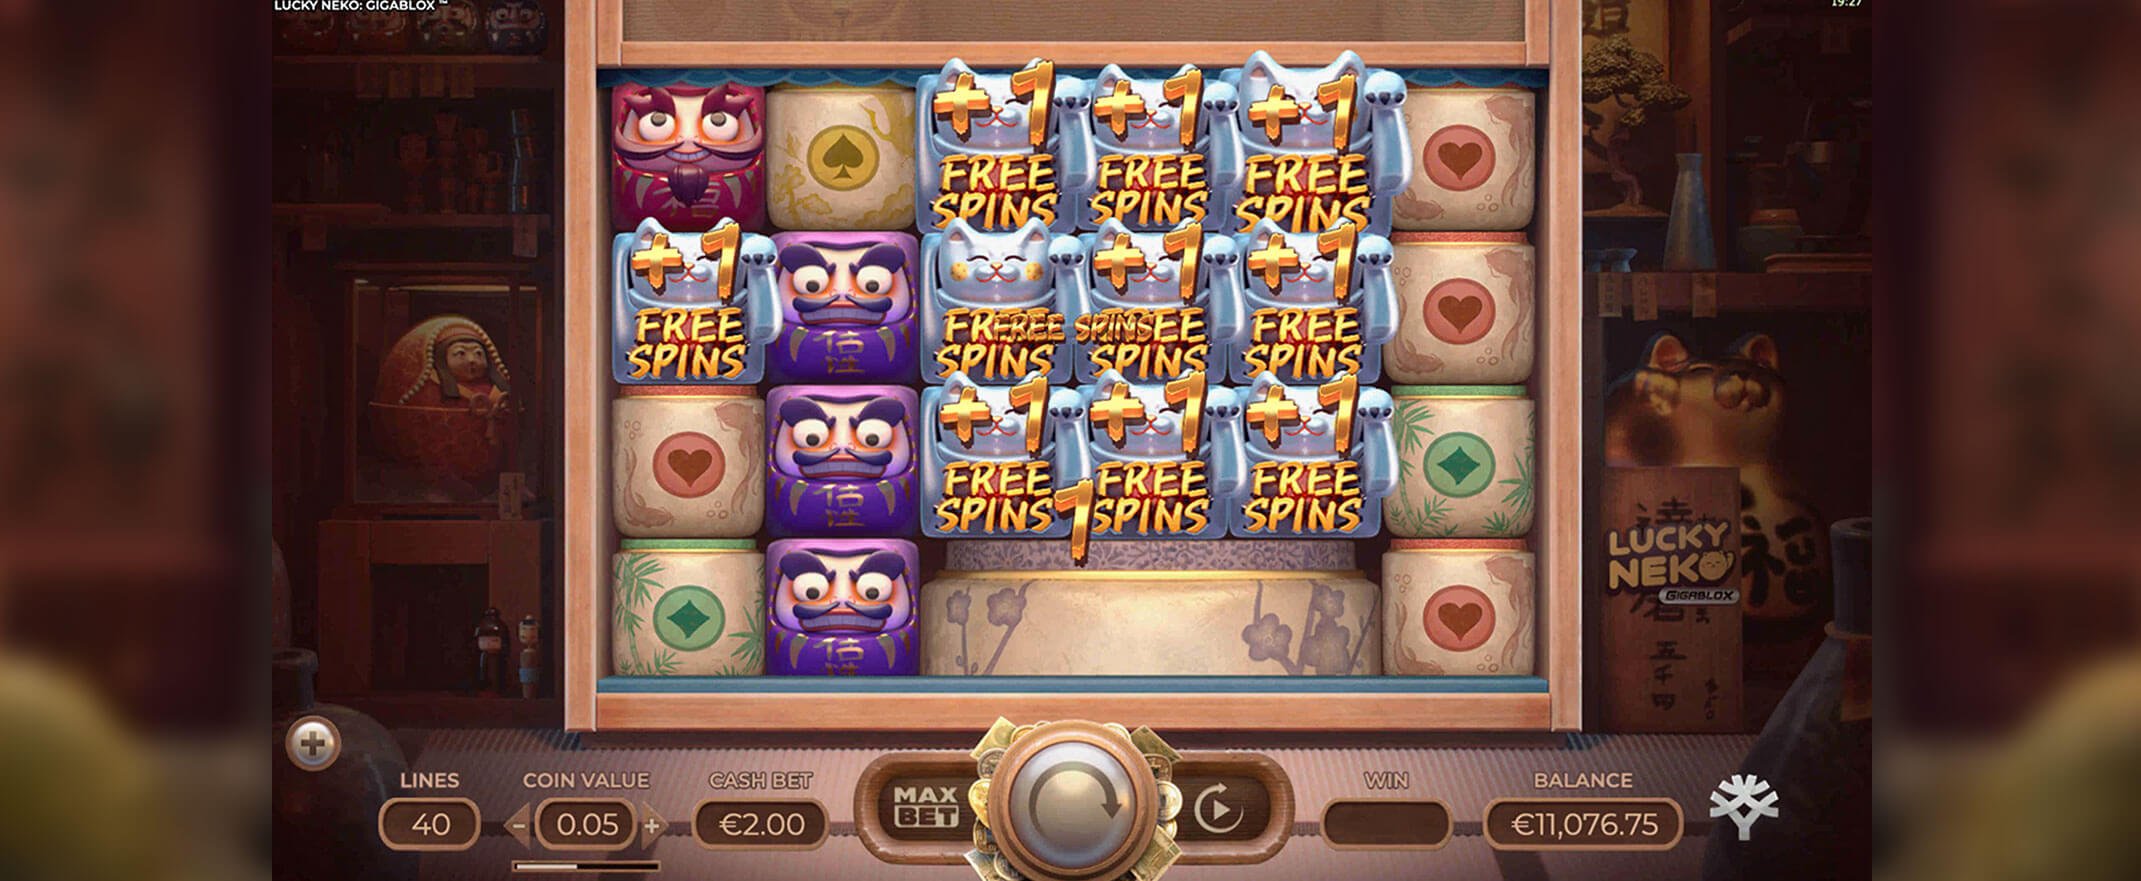 Lucky Neko Gigablox Slot Screenshot